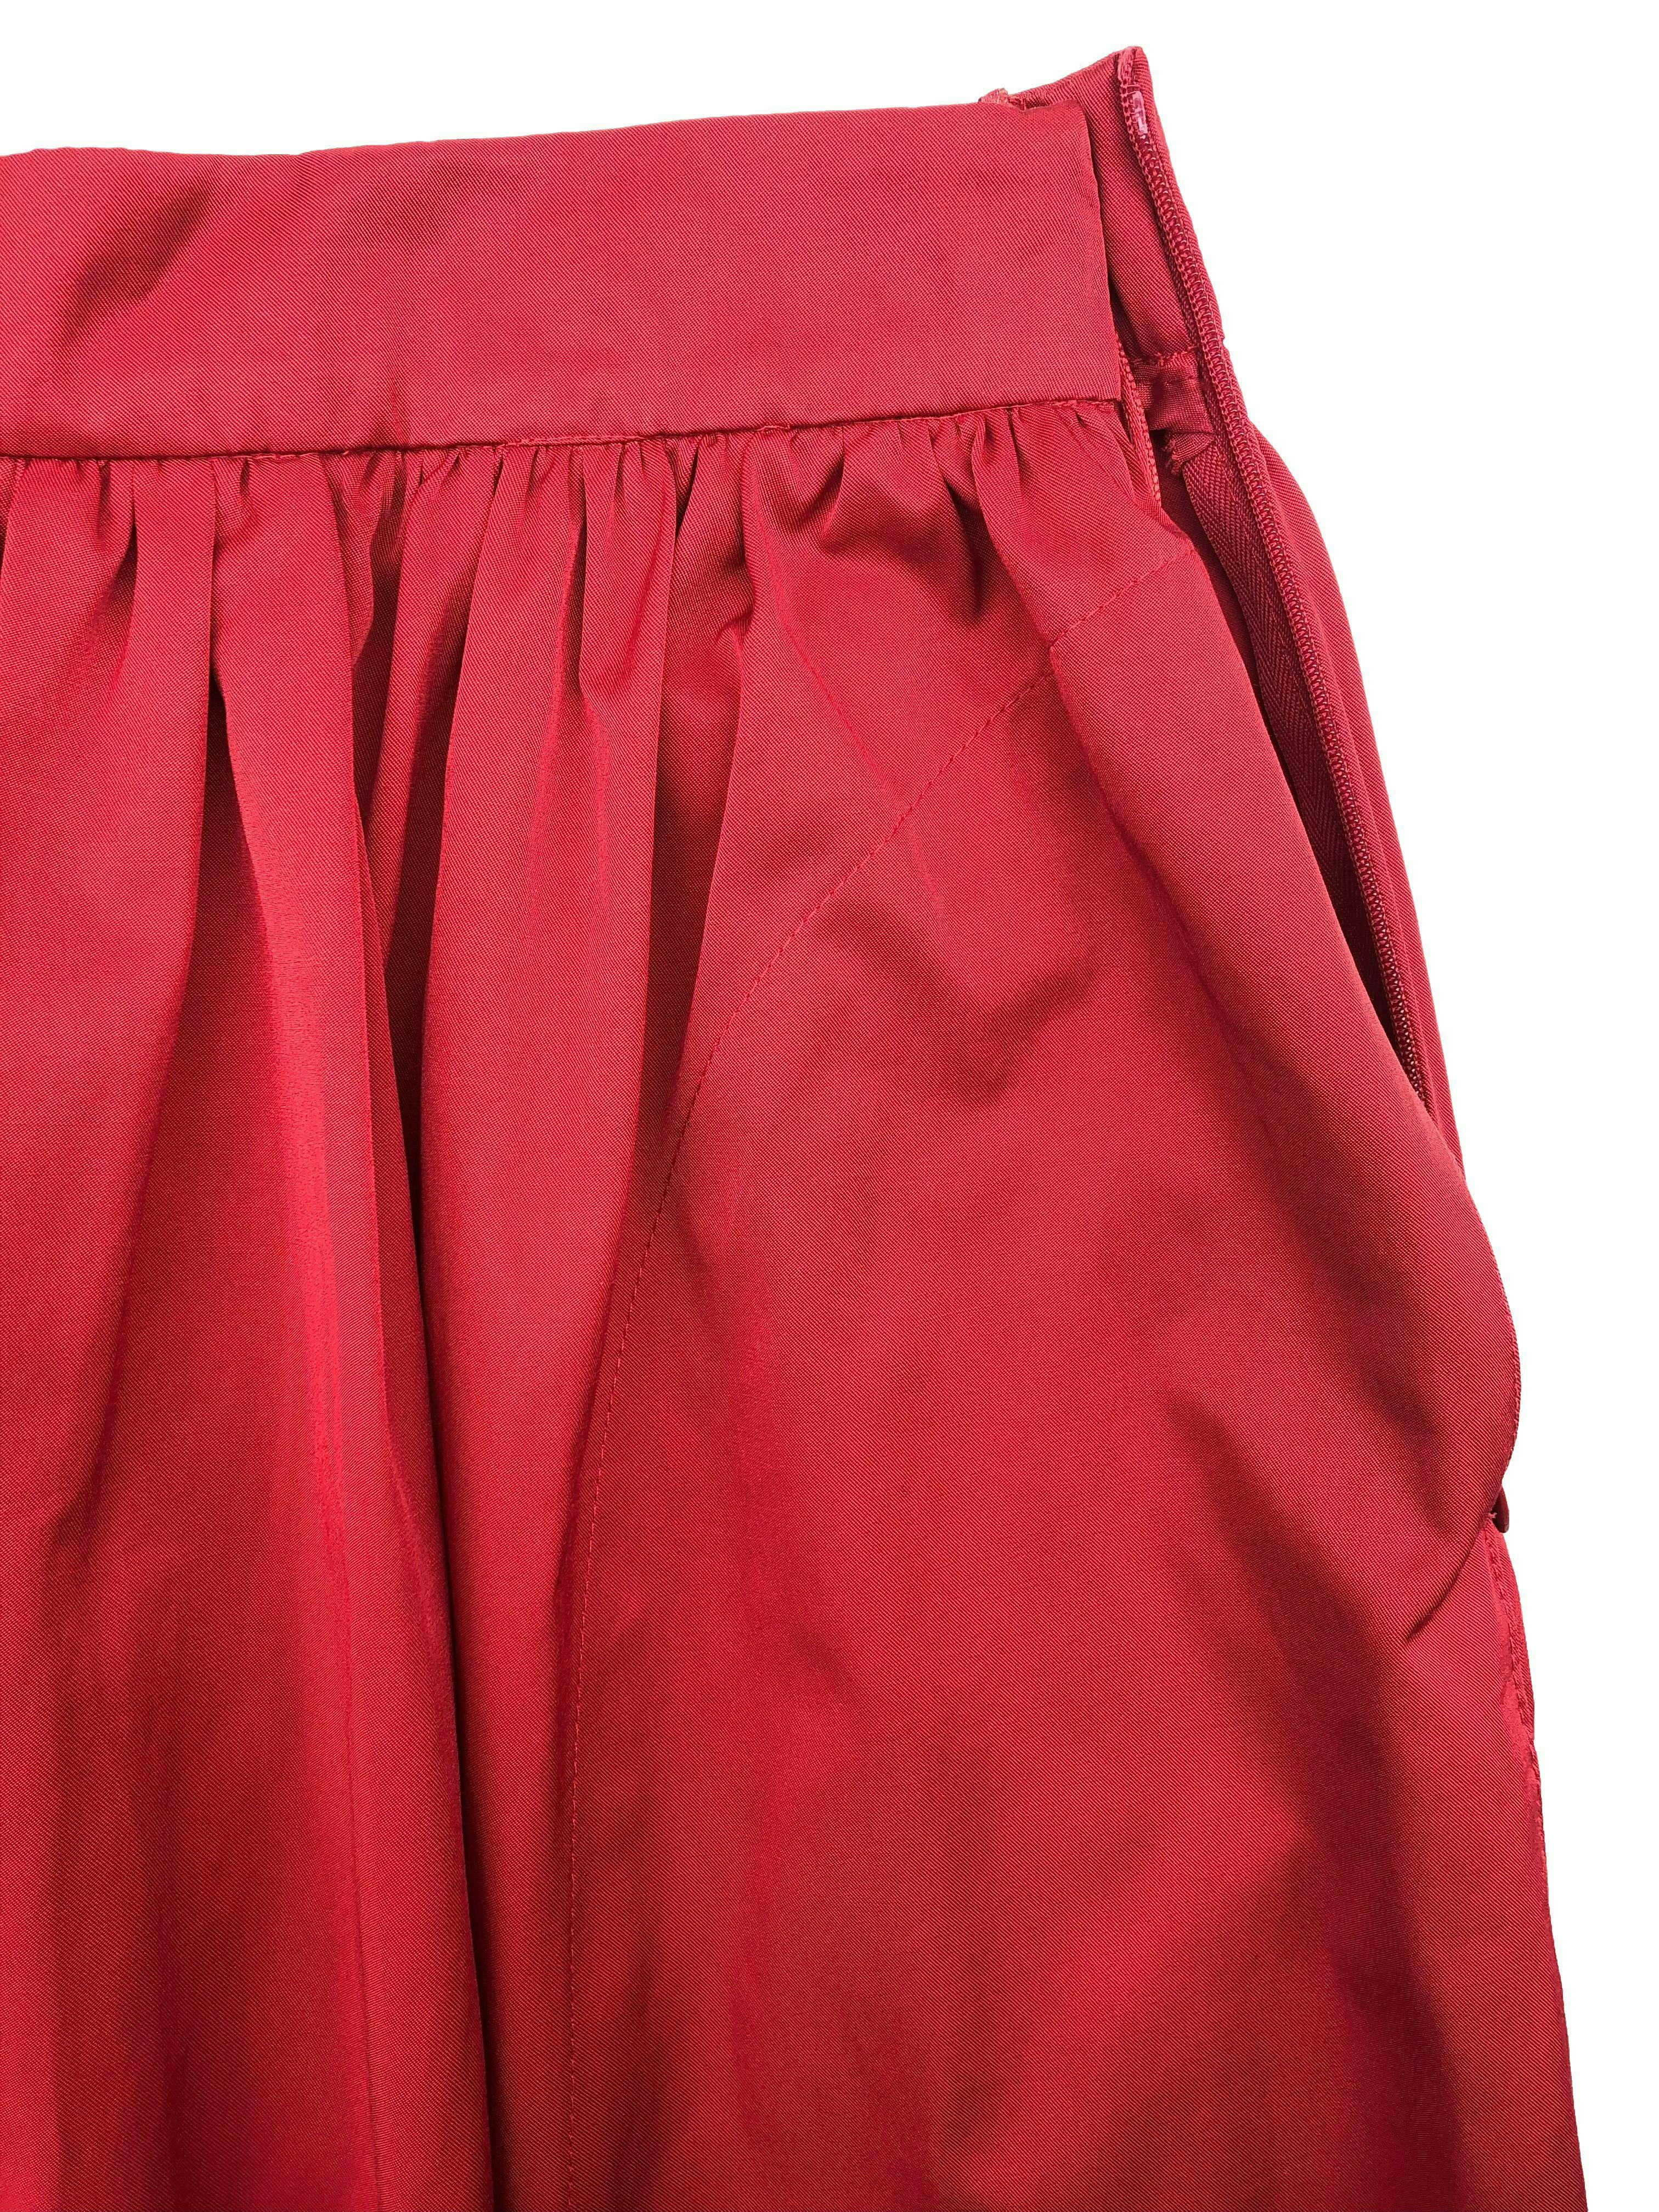 Falda midi Zara tela gabardina roja, con bolsillos laterales y cierre invisible. Cintura 70cm Largo 70cm. Nueva con etiqueta.